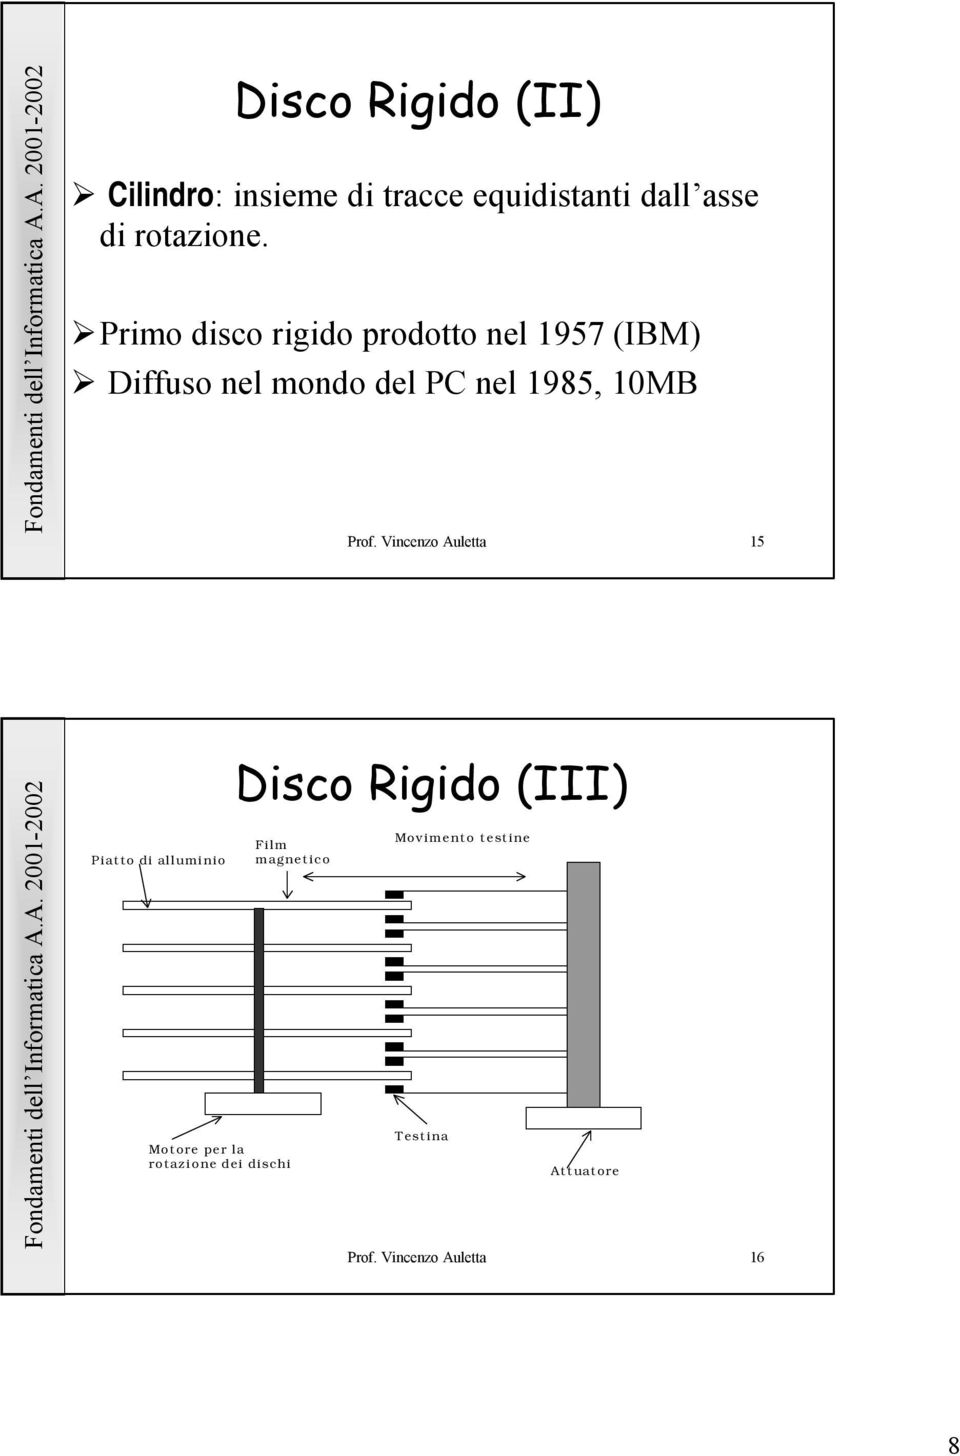 Prof. Vincenzo Auletta 15 Piatto di alluminio Disco Rigido (III) Film magnetico